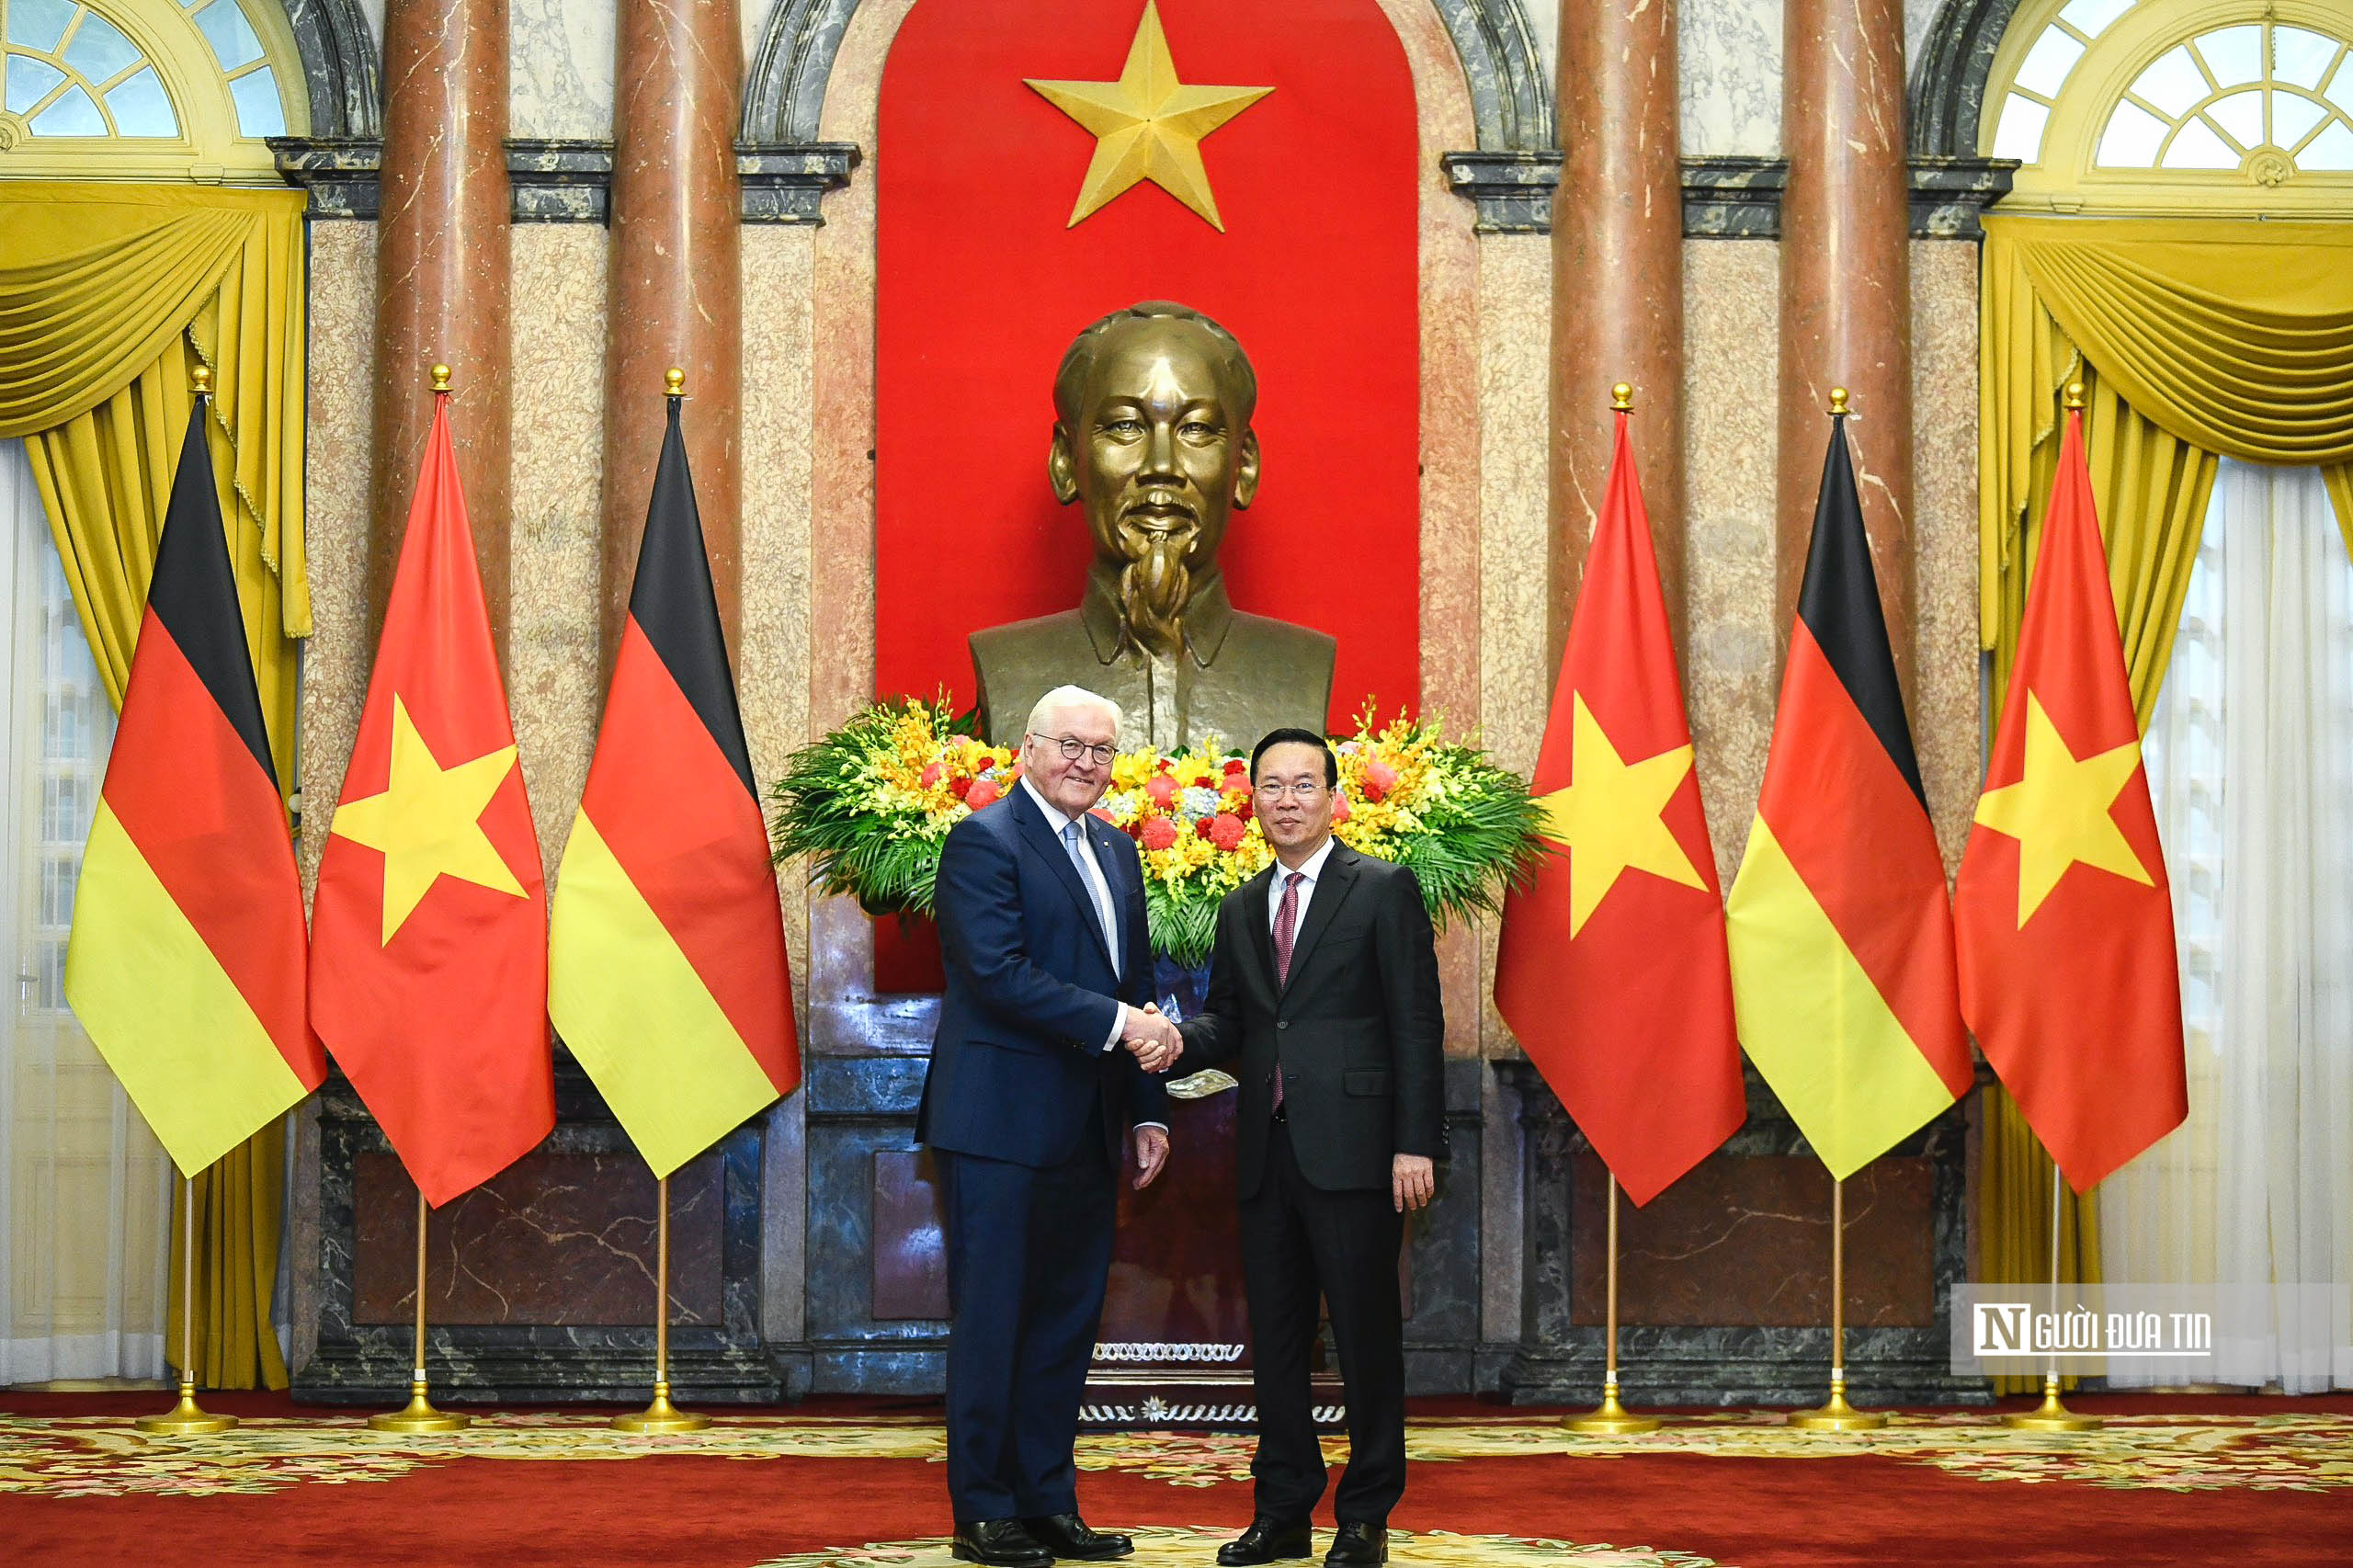 Tiêu điểm - Bắn 21 phát đại bác chào mừng Tổng thống Đức tới thăm Việt Nam (Hình 16).